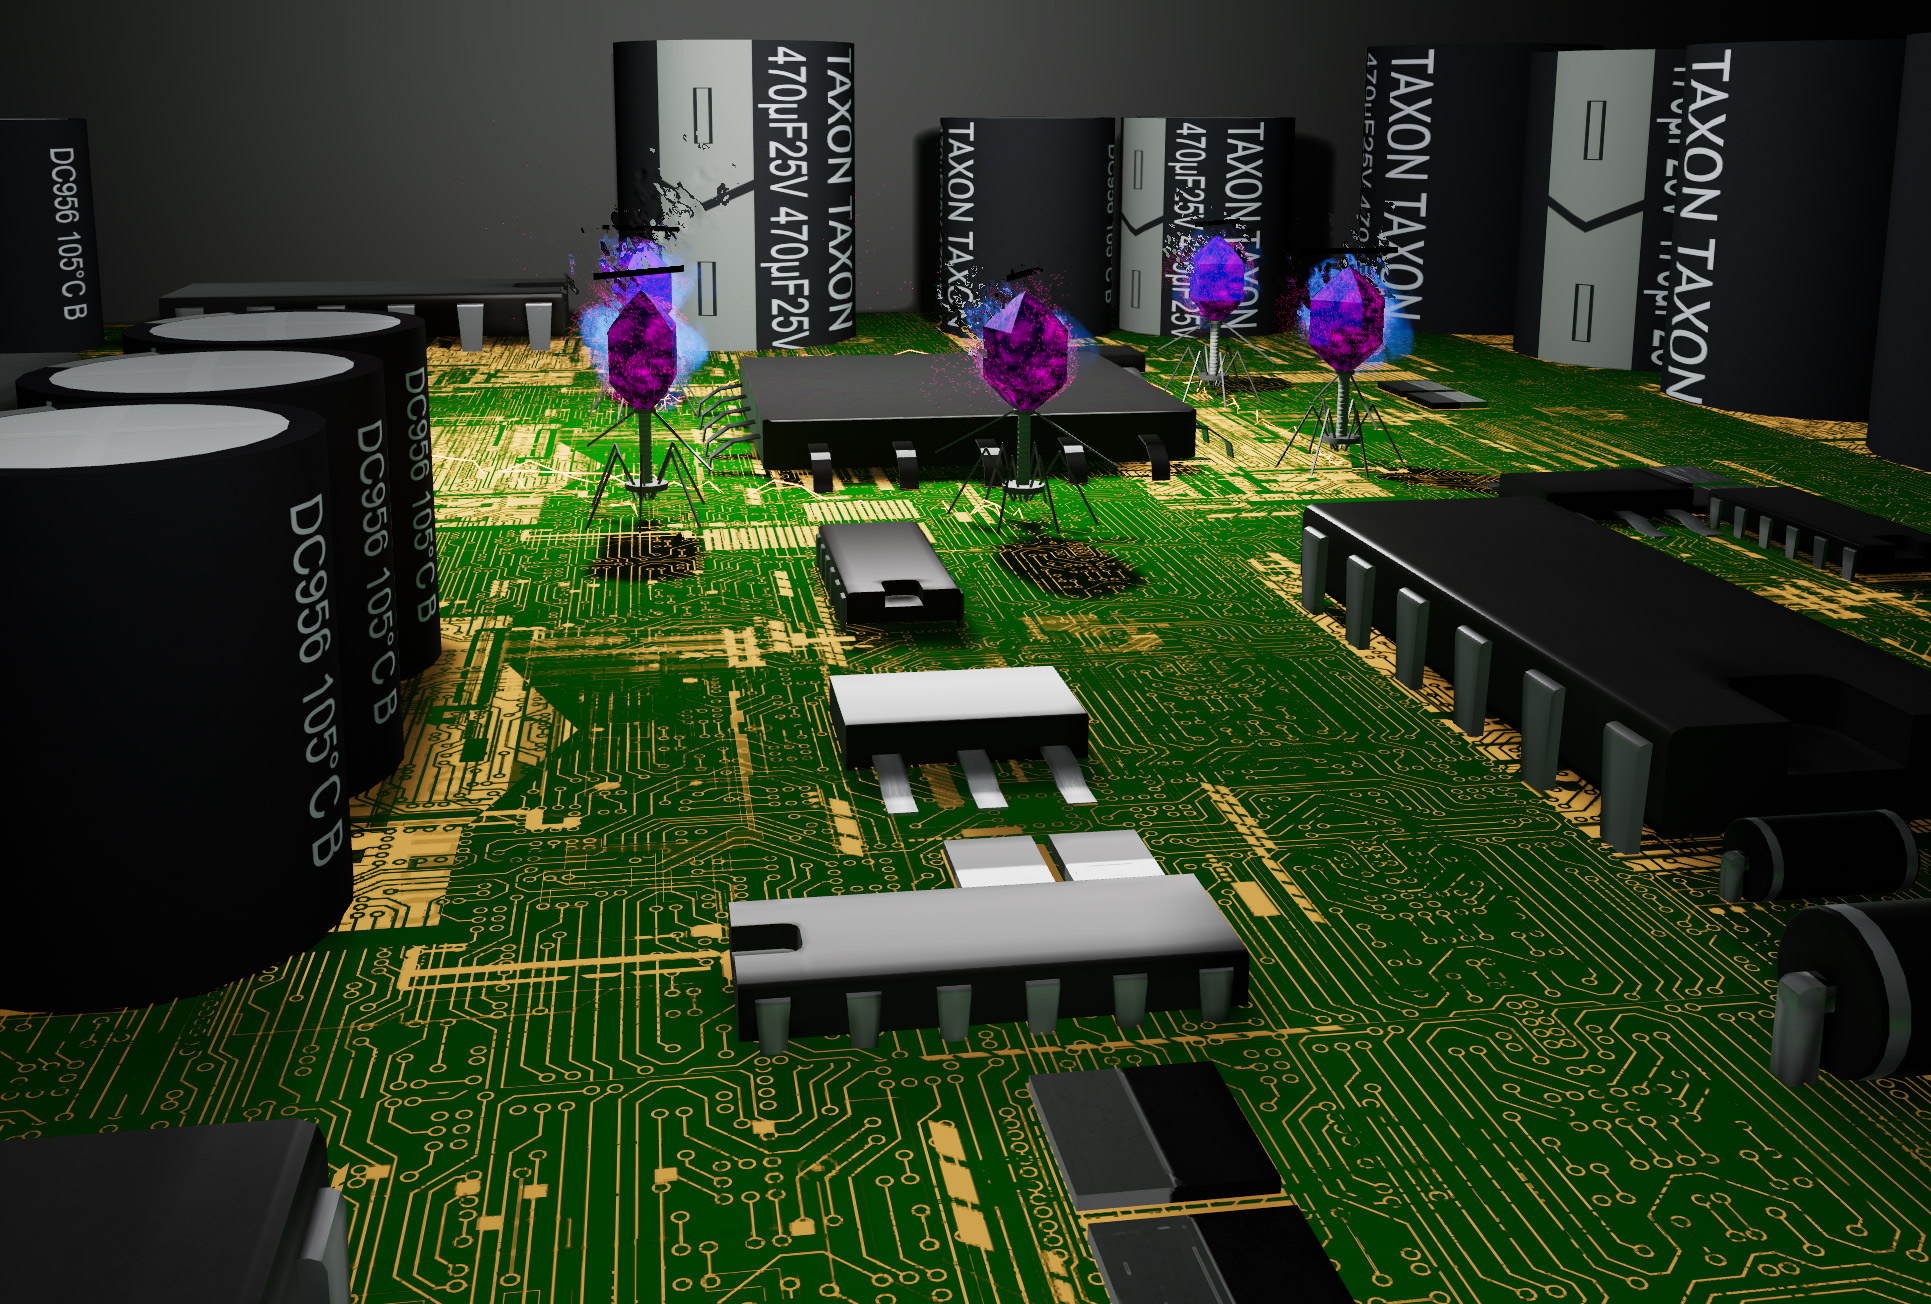 Circuit invaders Game play screenshot